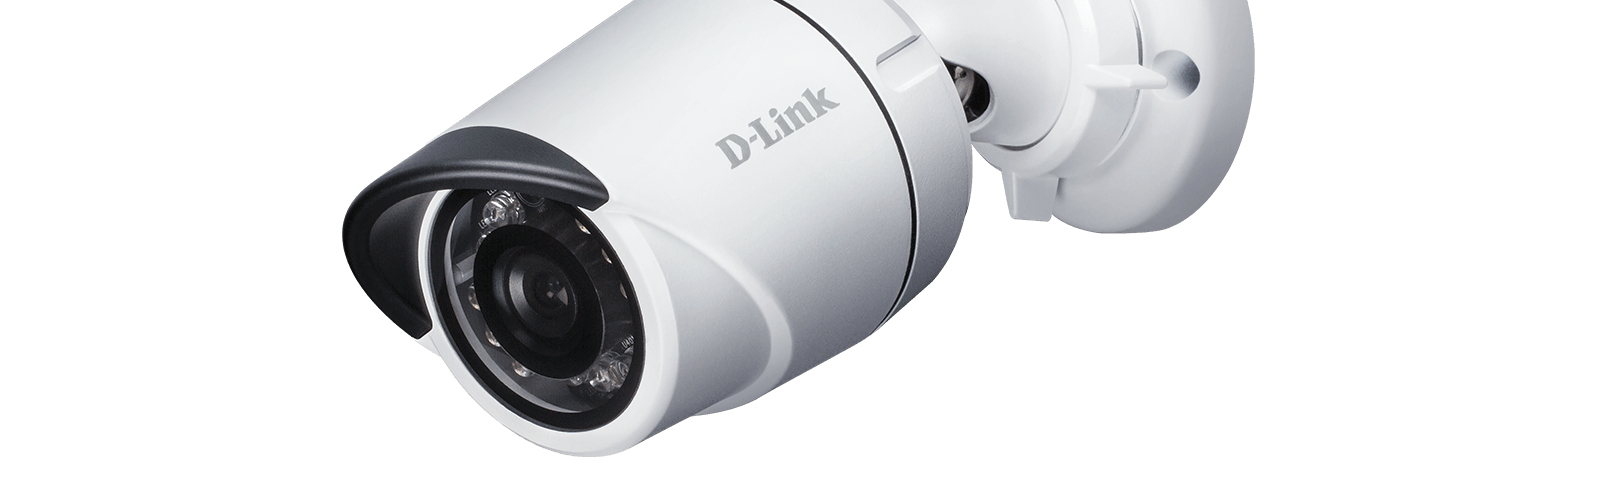 DCS-4705E Vigilance 5-Megapixel Outdoor Mini Bullet Camera